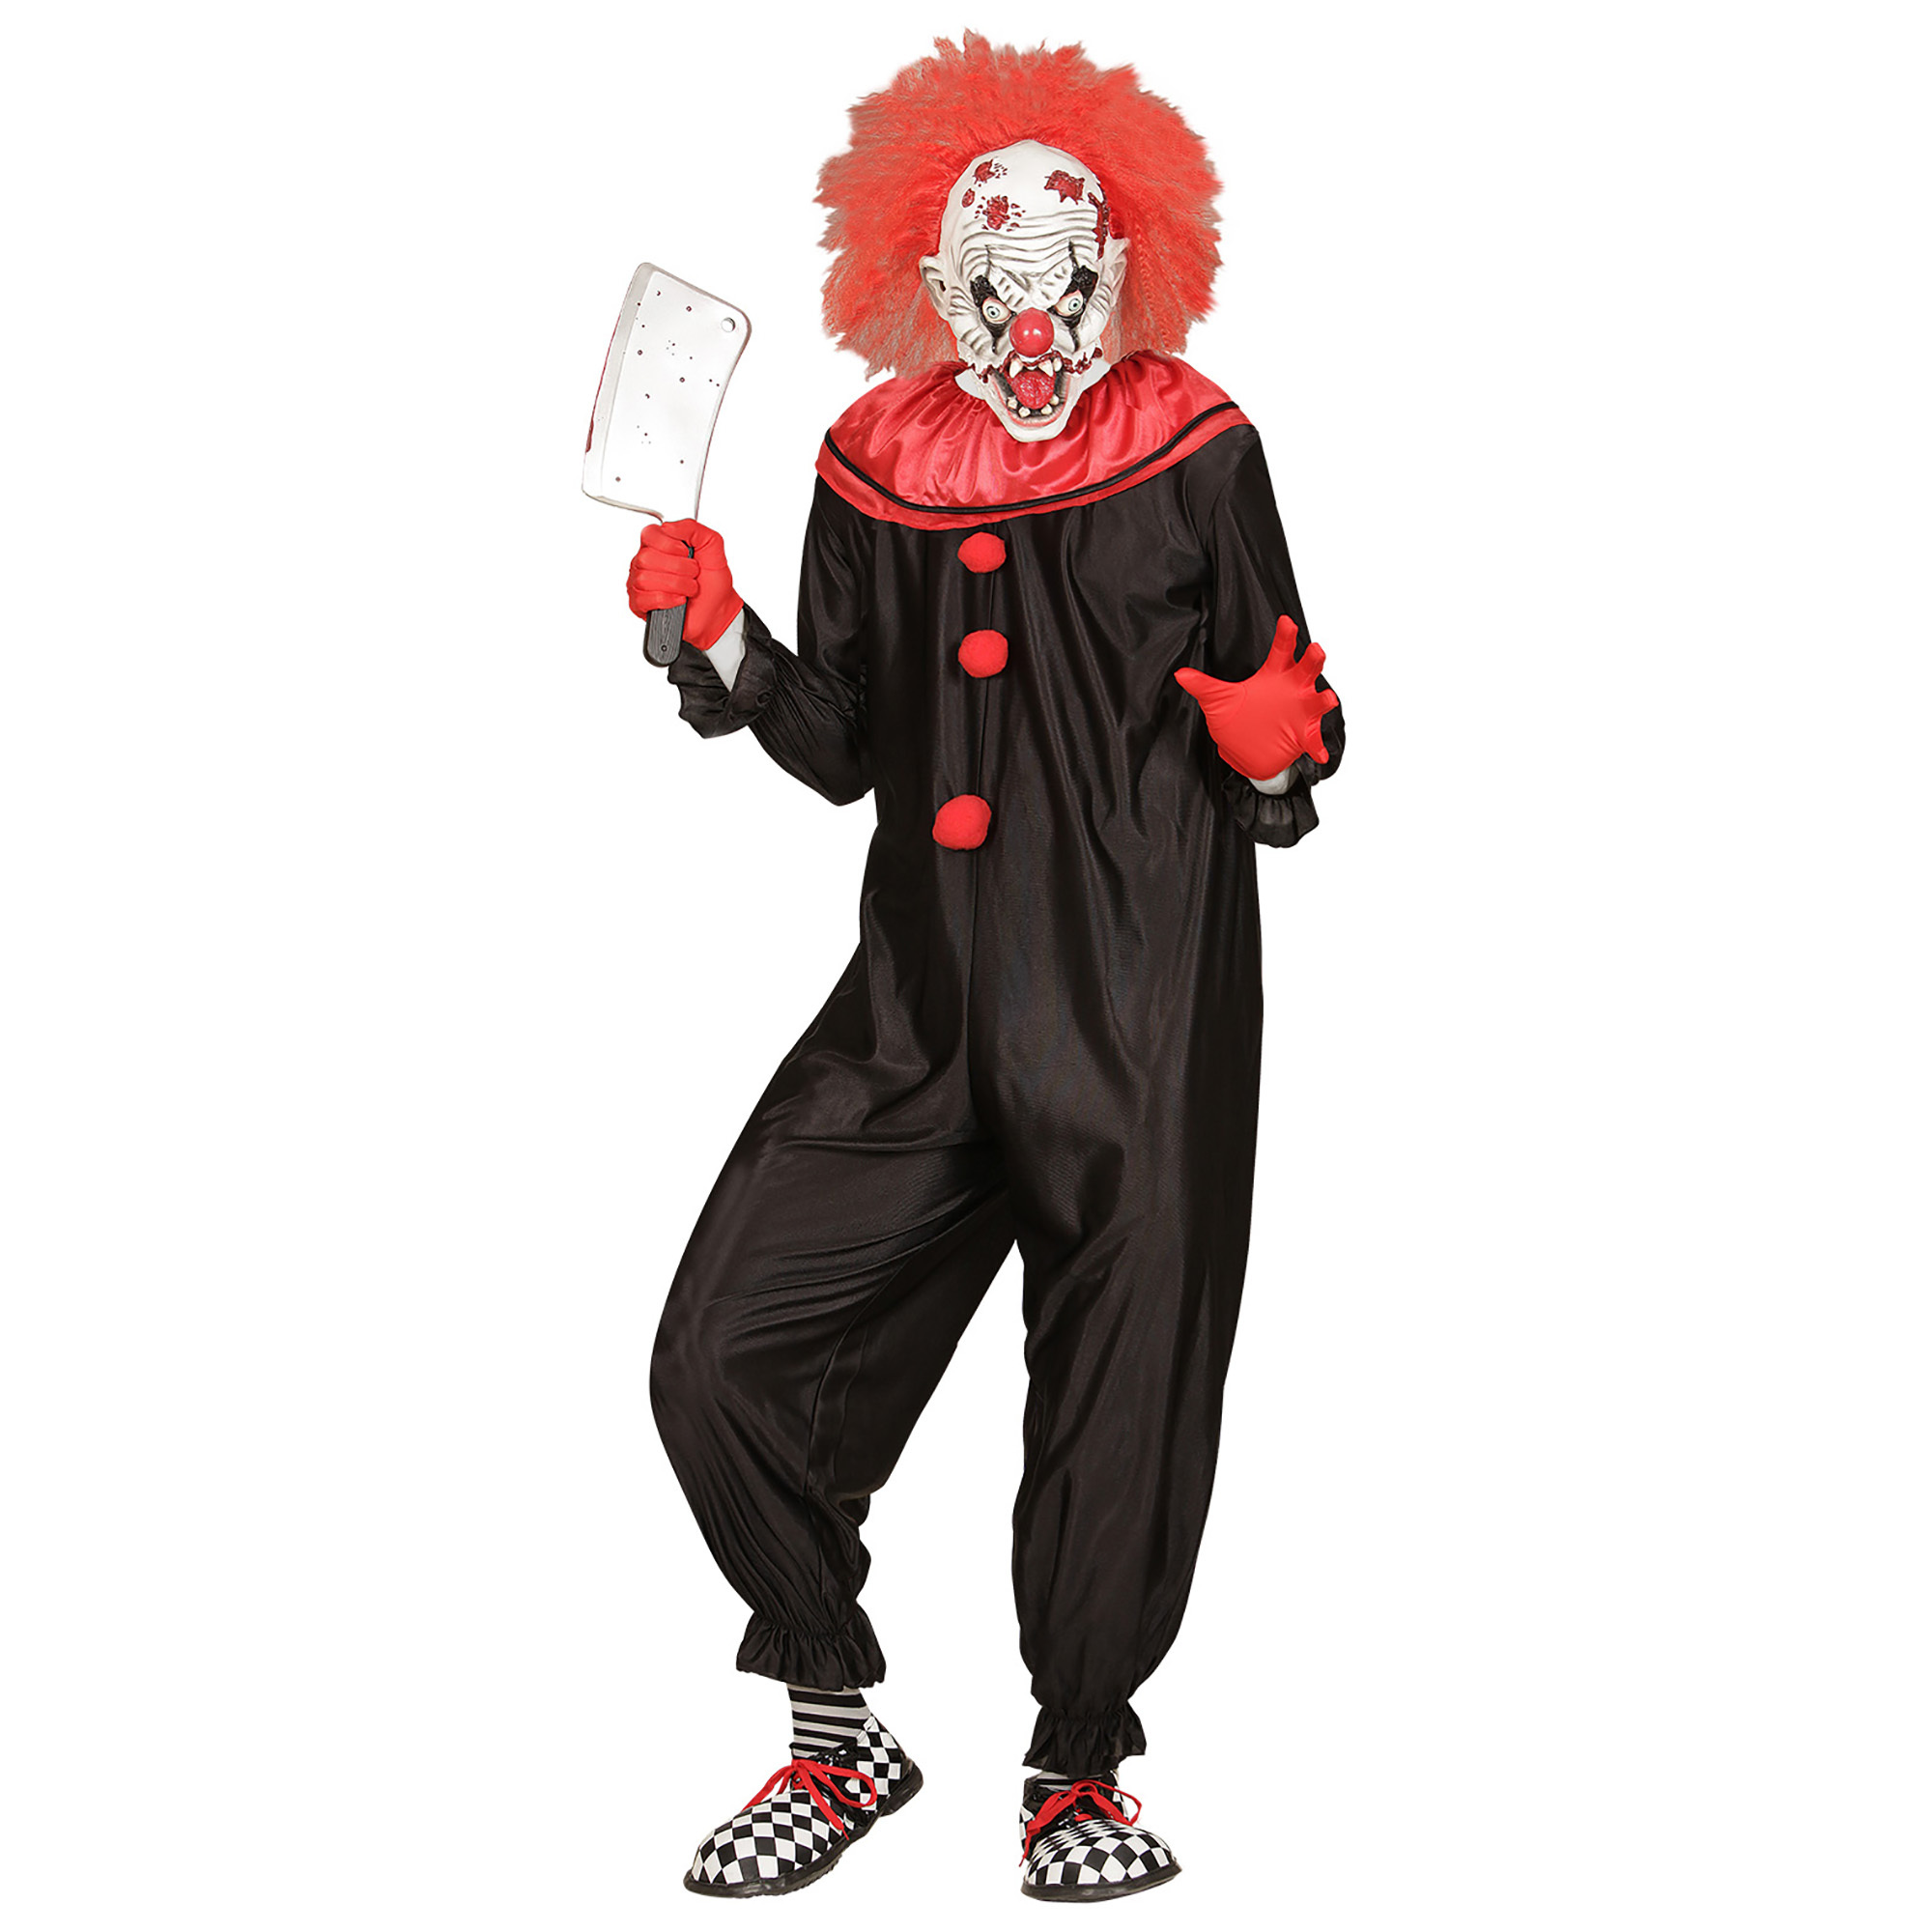 Killer clown kostuum volwassen